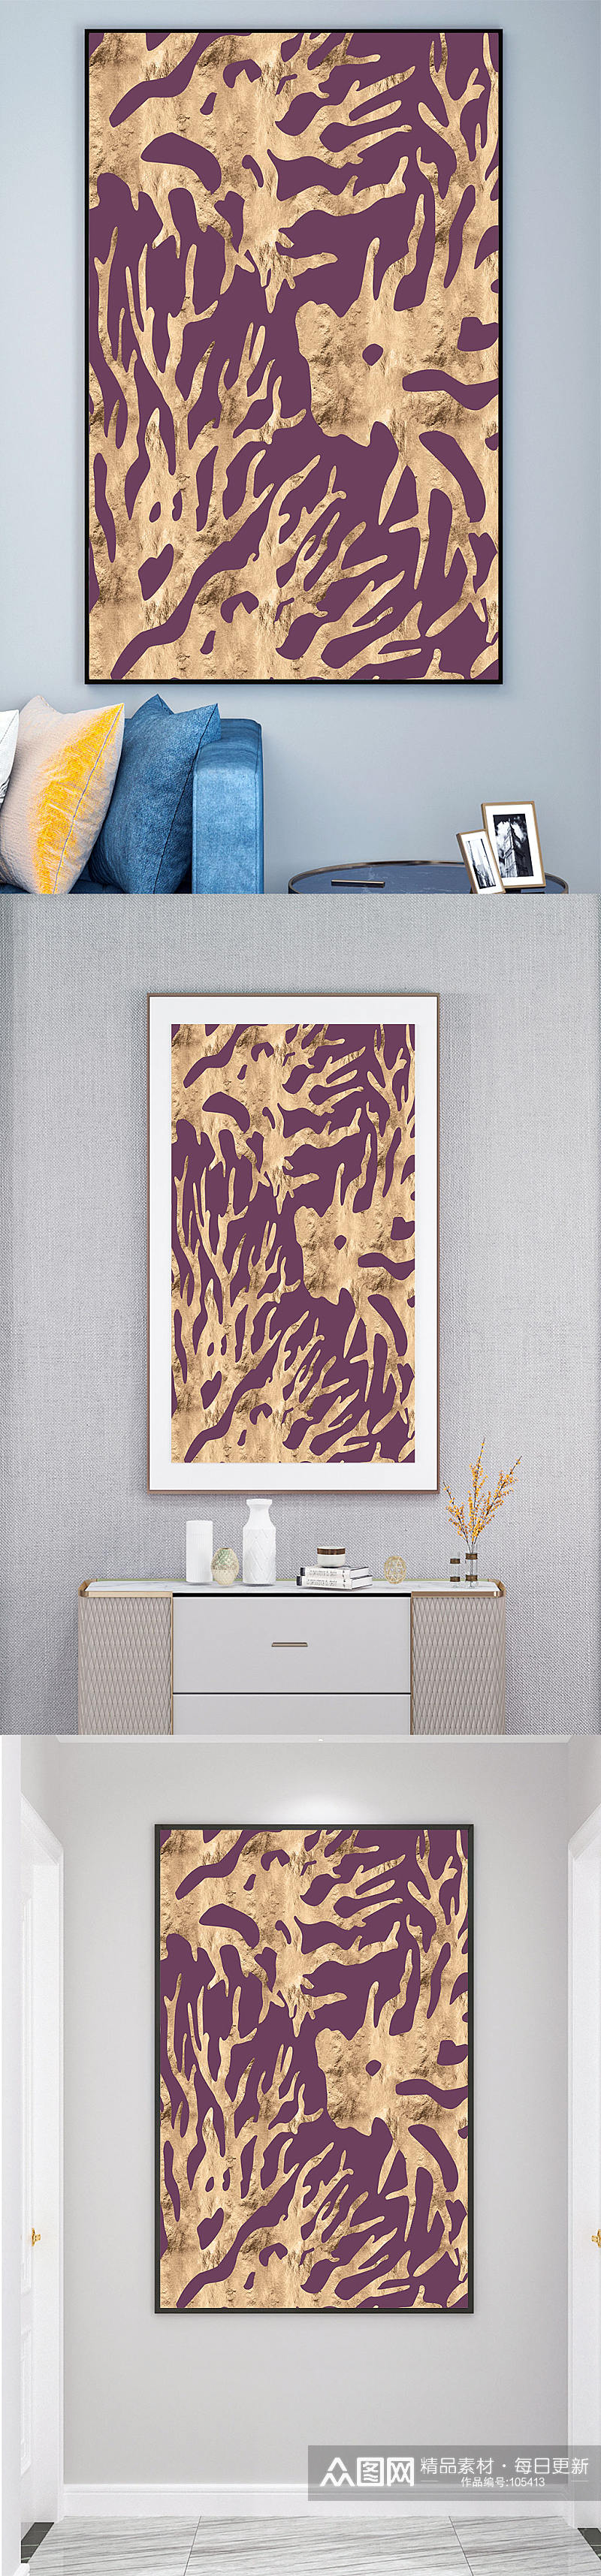 金色珊瑚抽象图案装饰画素材